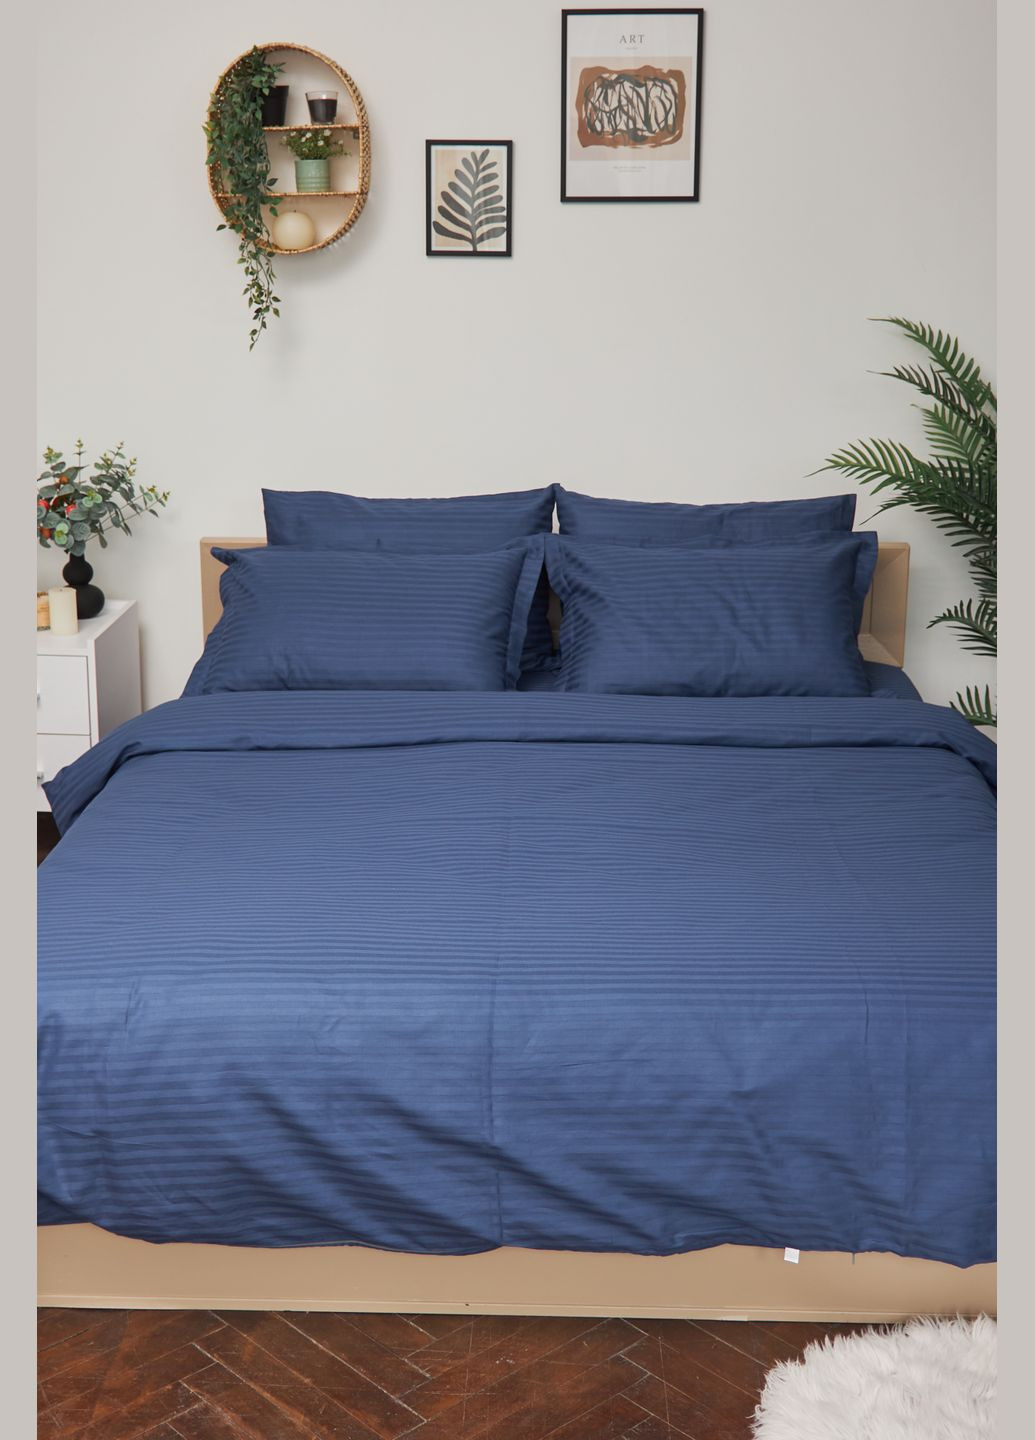 Комплект постельного белья евро 200х220 наволочки 2х40х60 Satin Stripe (MS-820000500) Moon&Star delfi blue (284416655)